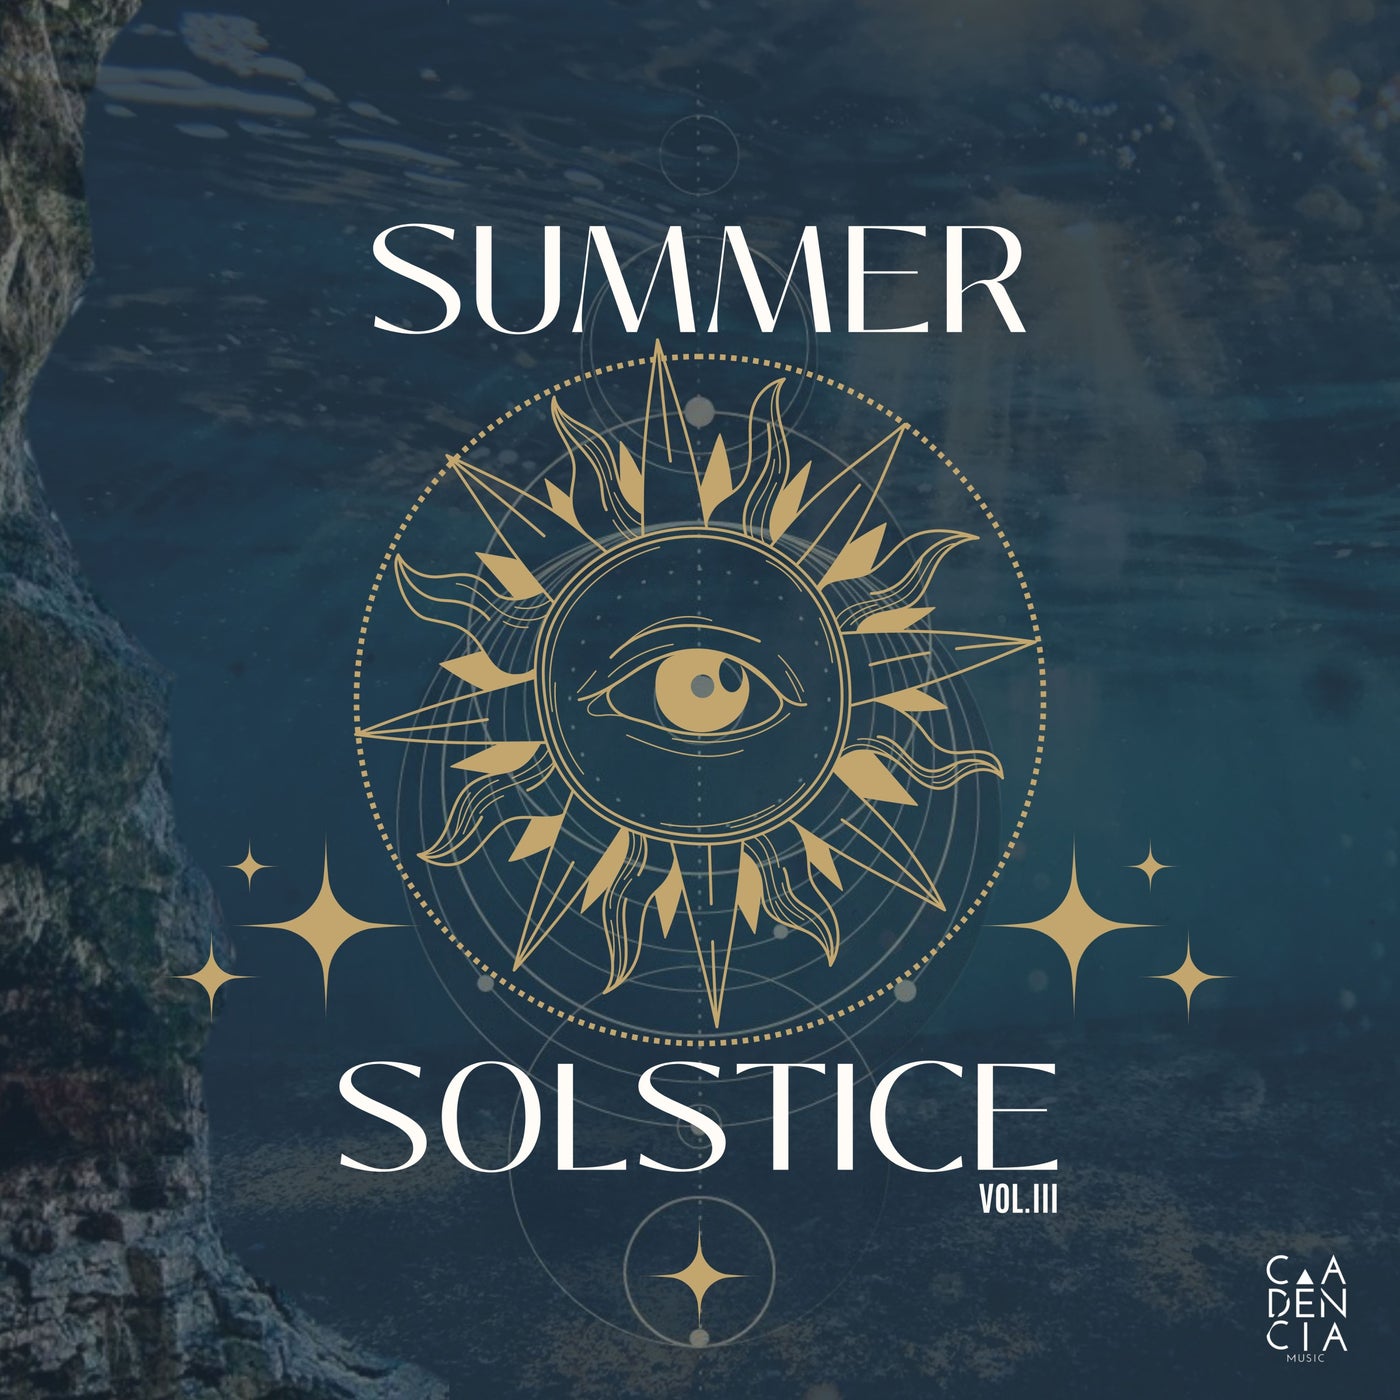 Summer Solstice III